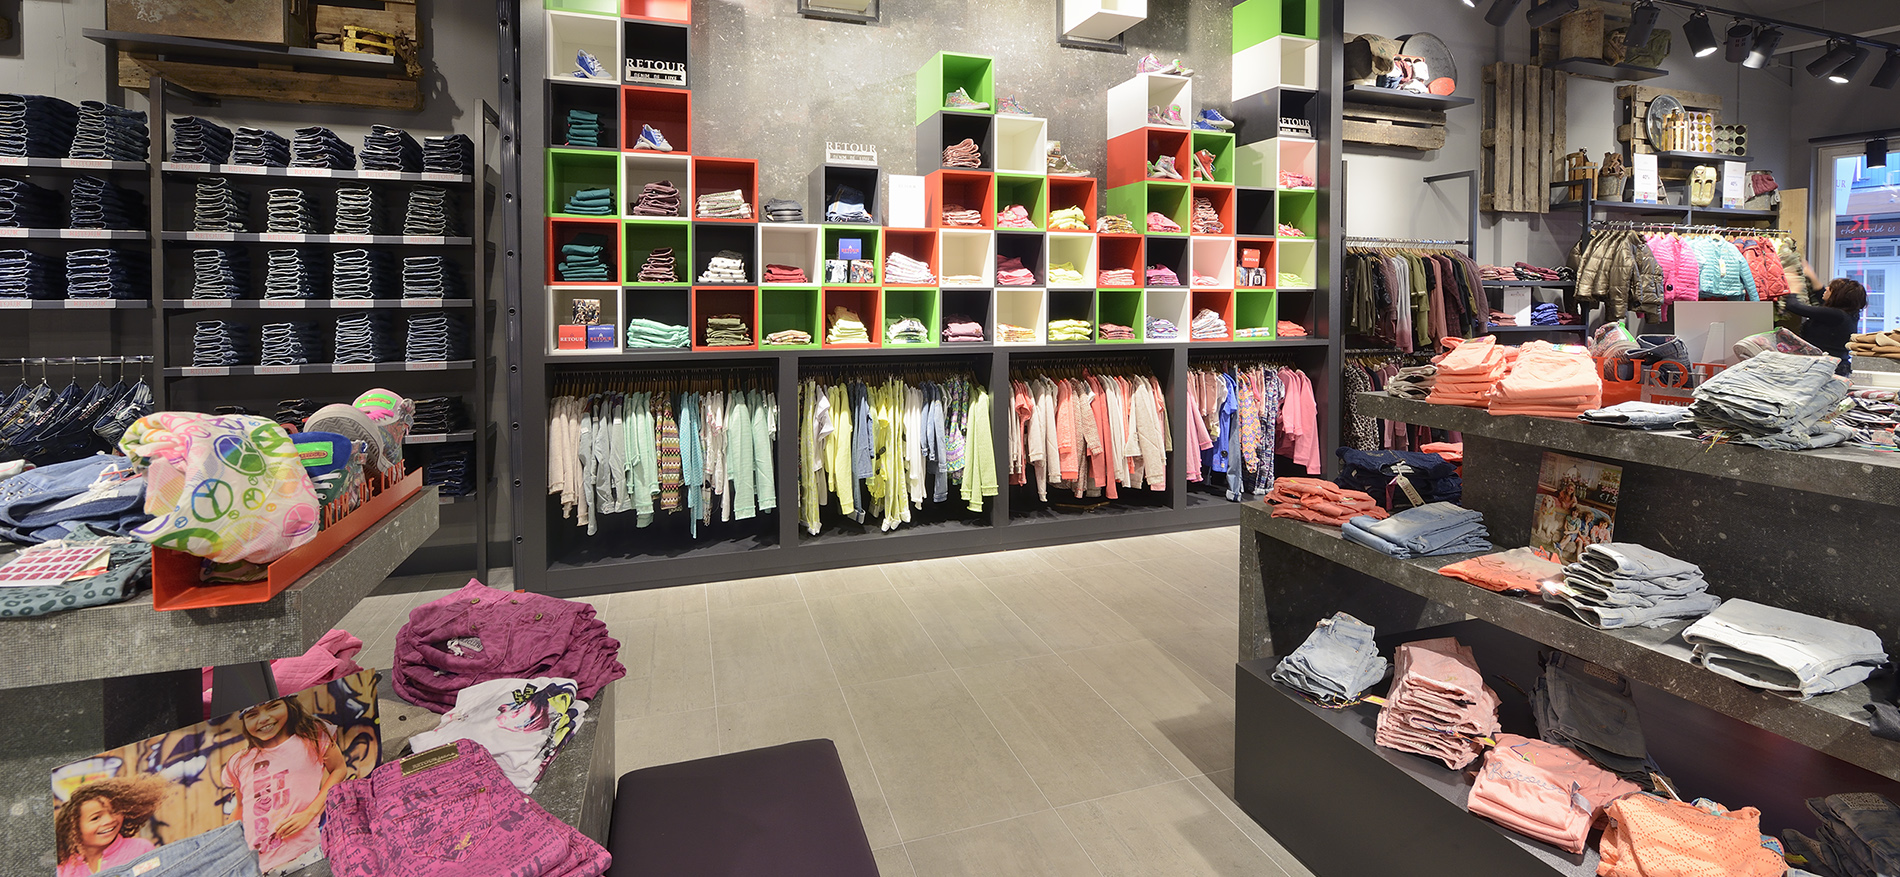 Retail design for Retour Jeans Denim deluxe in Batiaviastad - Fashion